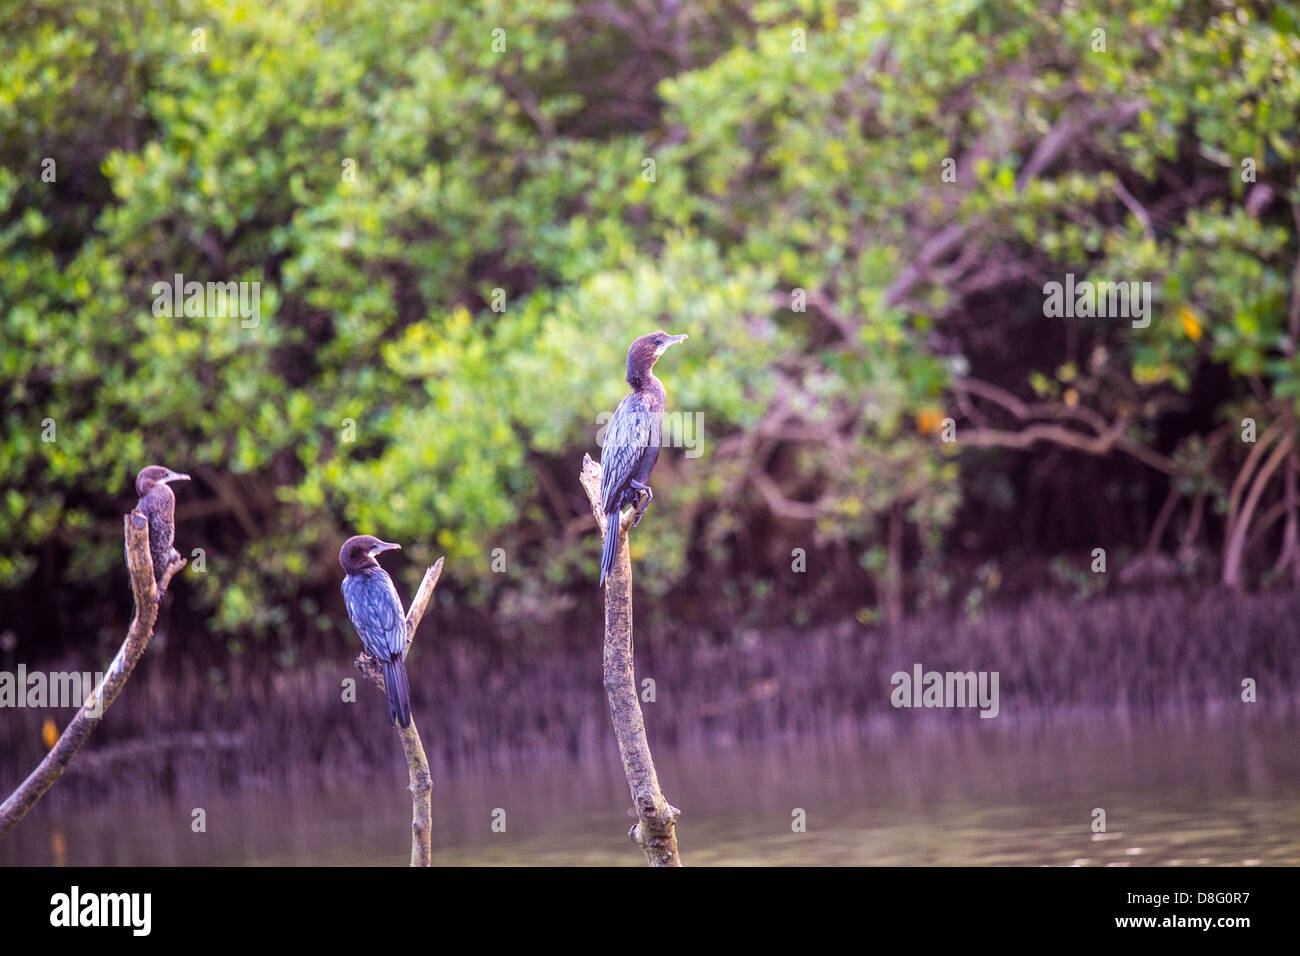 Cormorants fishing near Palolem Beach, Goa, India Stock Photo